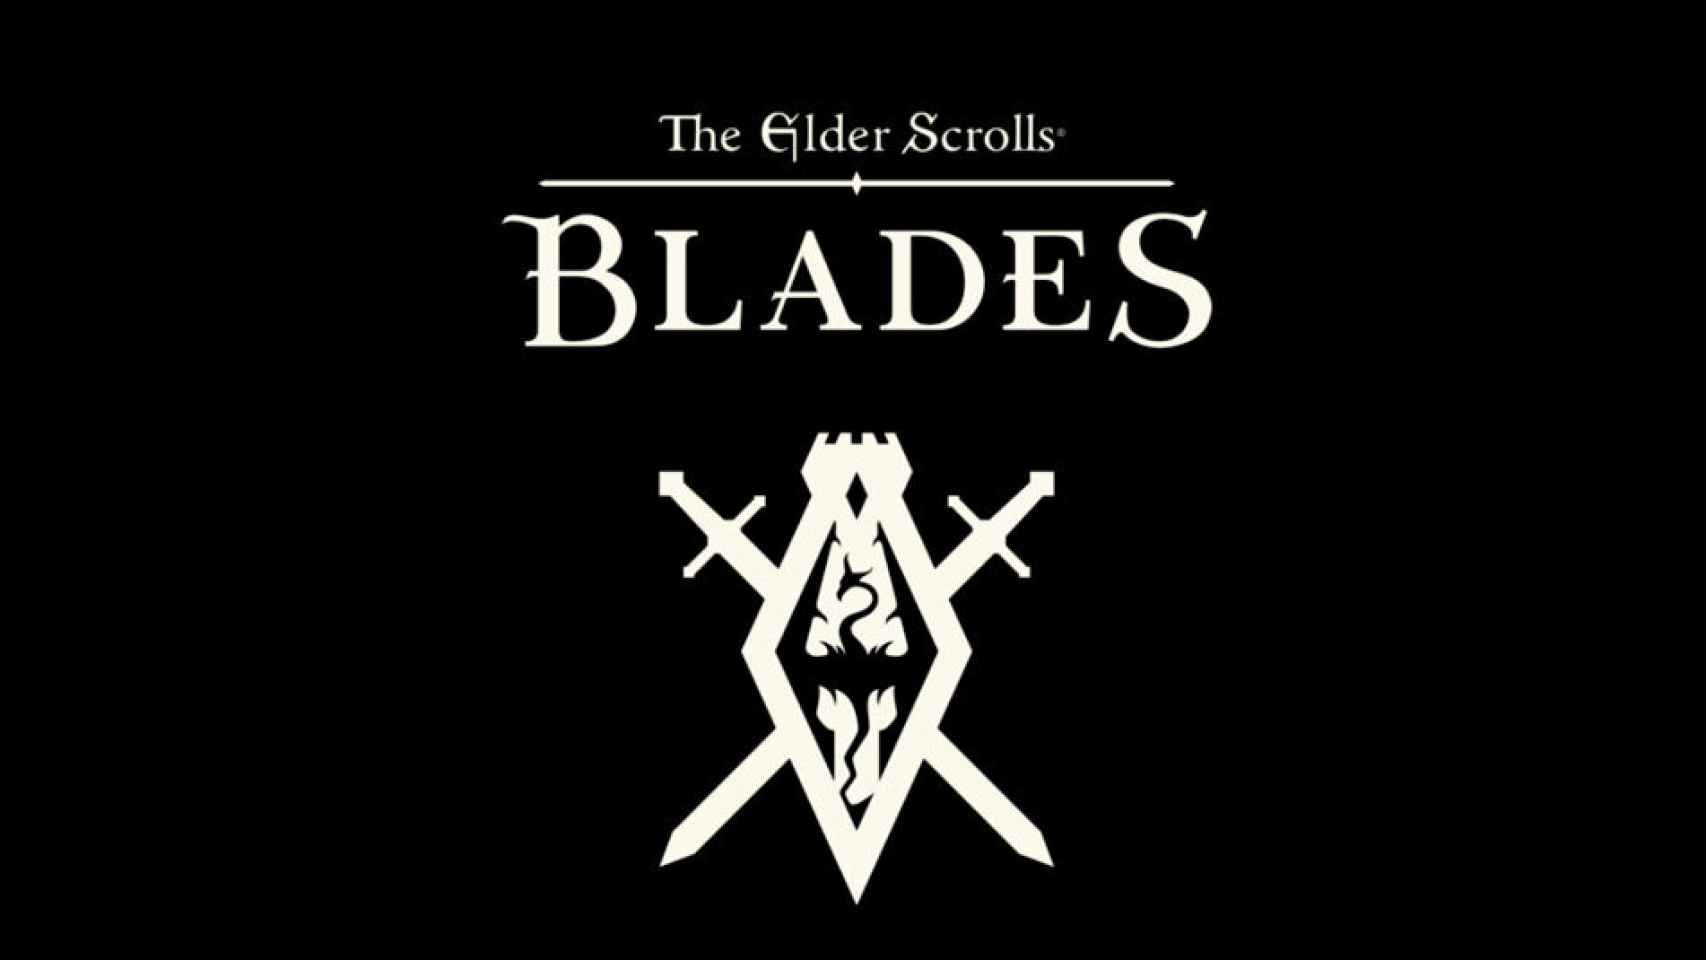 The Elder Scrolls: Blades ya se puede descargar en acceso anticipado